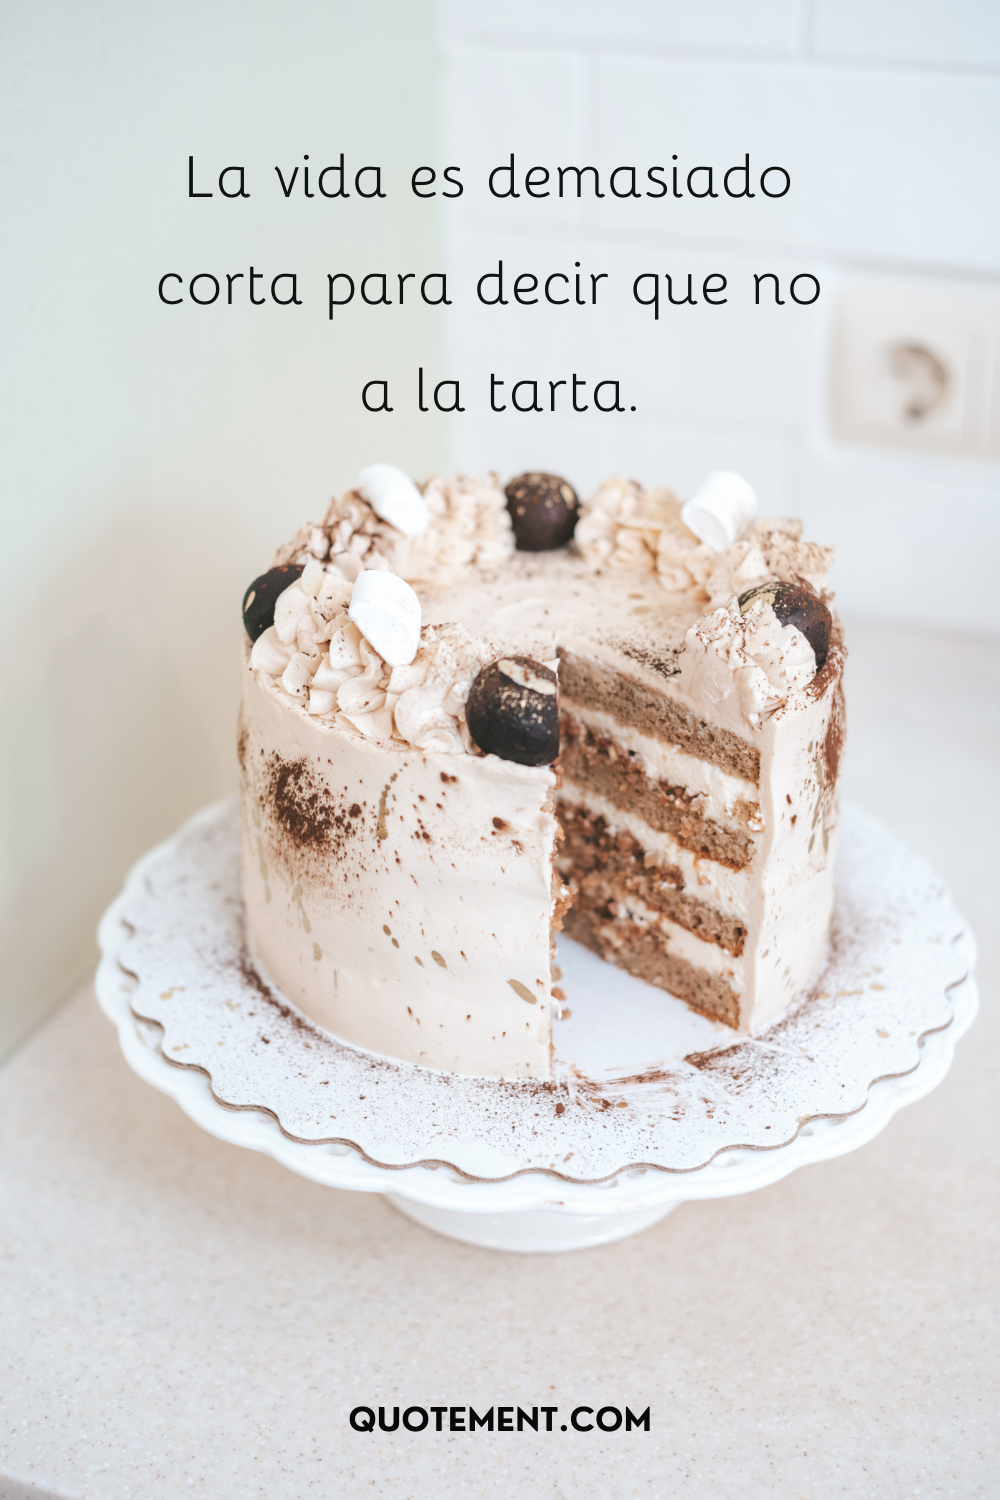 La vida es demasiado corta para decir no a la tarta